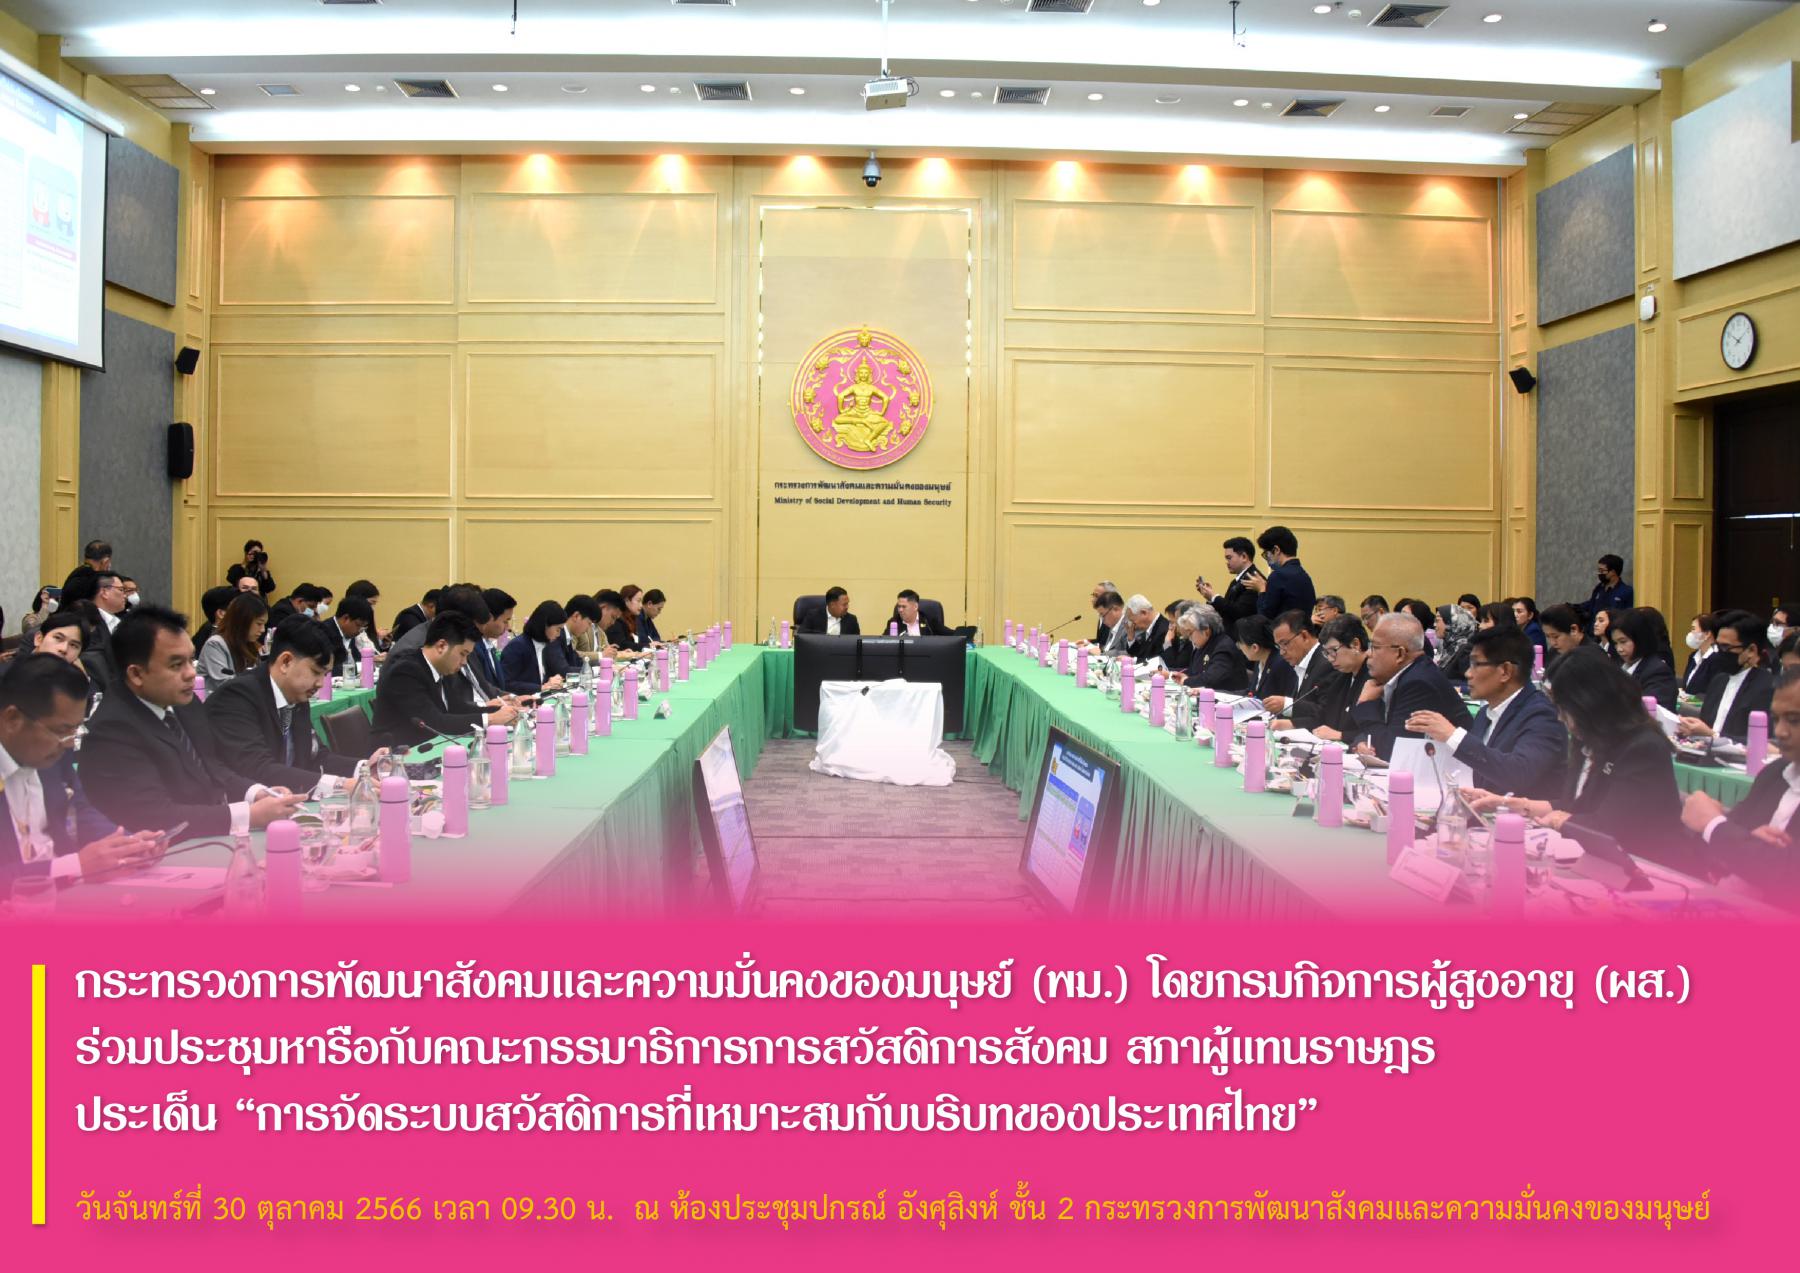 พม.  โดยกรมกิจการผู้สูงอายุ (ผส.) ร่วมประชุมหารือกับคณะกรรมาธิการการสวัสดิการสังคม สภาผู้แทนราษฎร ประเด็น “การจัดระบบสวัสดิการที่เหมาะสมกับบริบทของประเทศไทย”